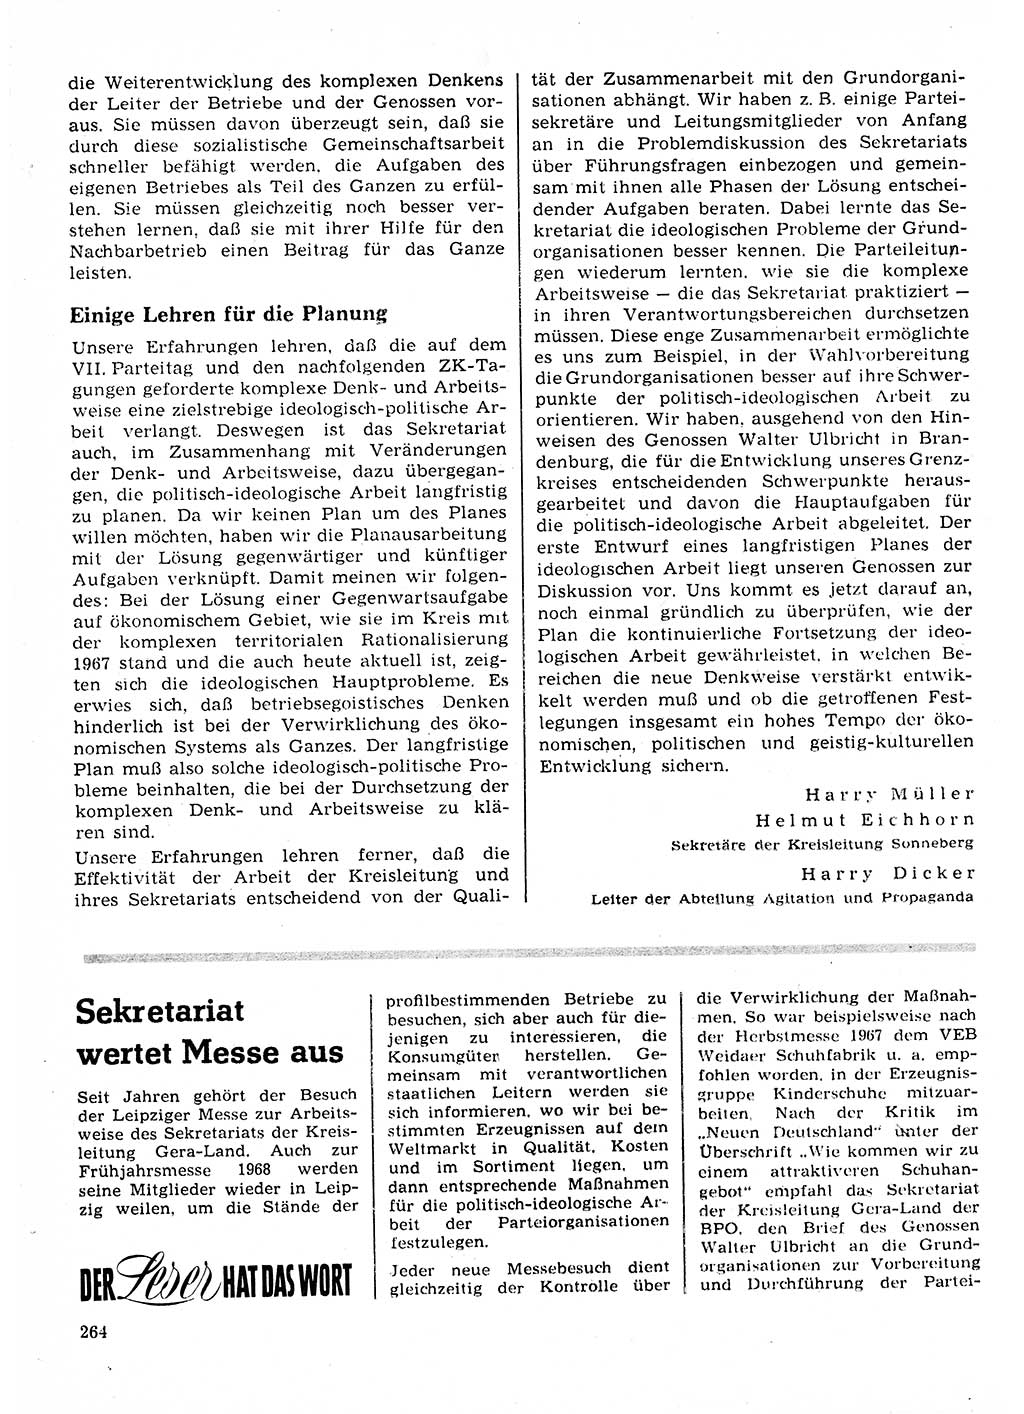 Neuer Weg (NW), Organ des Zentralkomitees (ZK) der SED (Sozialistische Einheitspartei Deutschlands) für Fragen des Parteilebens, 23. Jahrgang [Deutsche Demokratische Republik (DDR)] 1968, Seite 264 (NW ZK SED DDR 1968, S. 264)